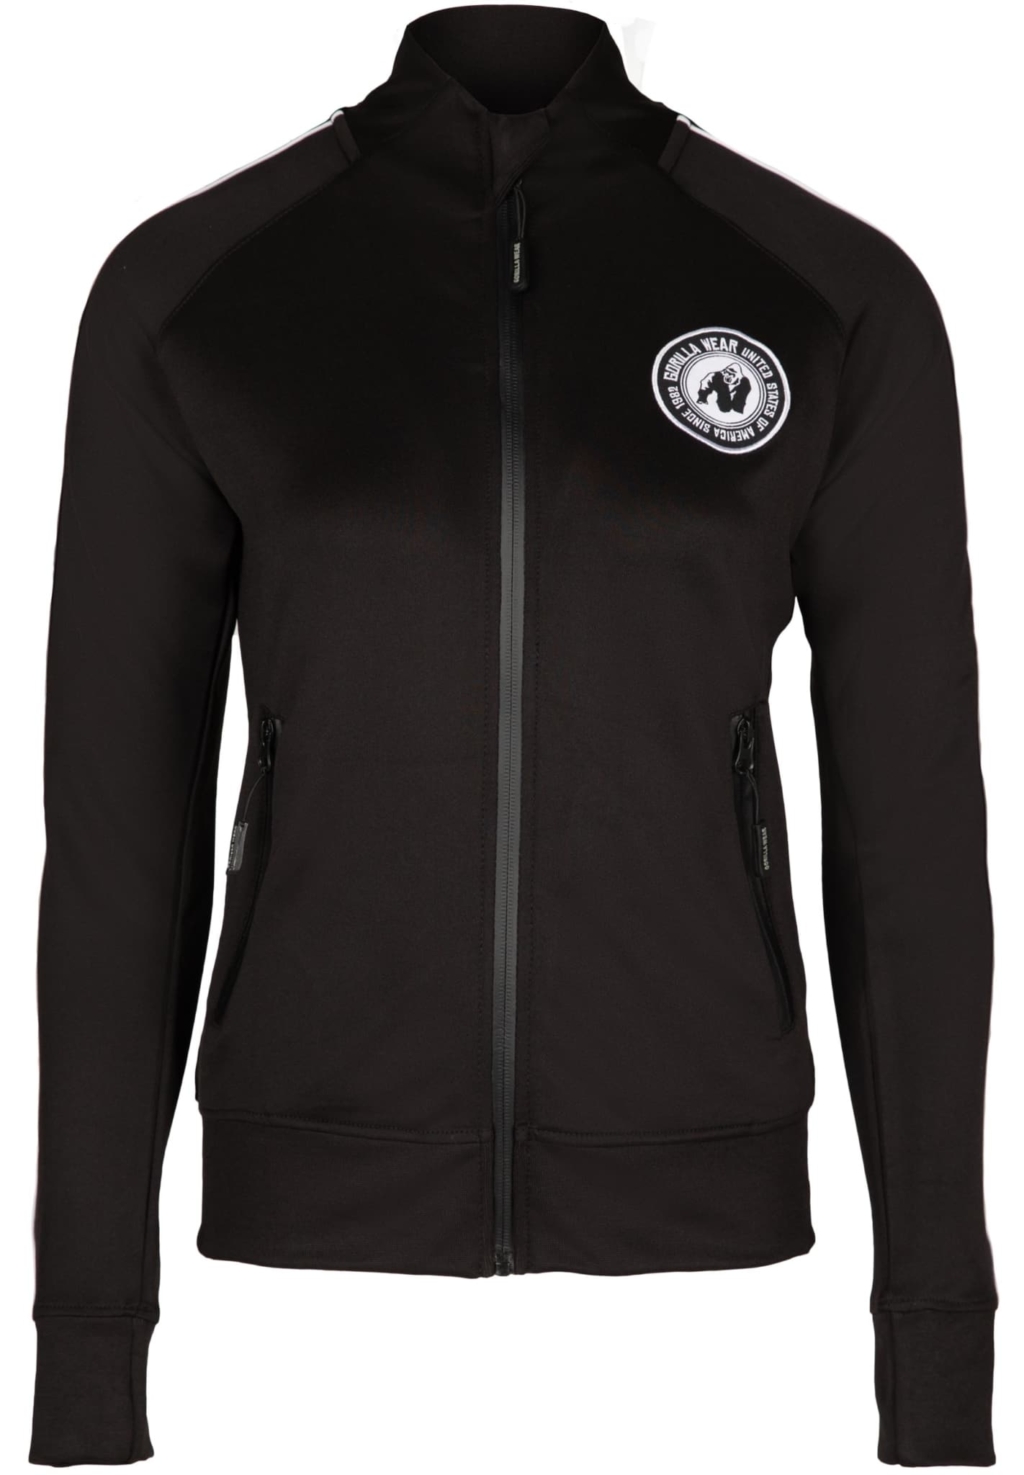 91810900 montana track jacket black 01 scaled